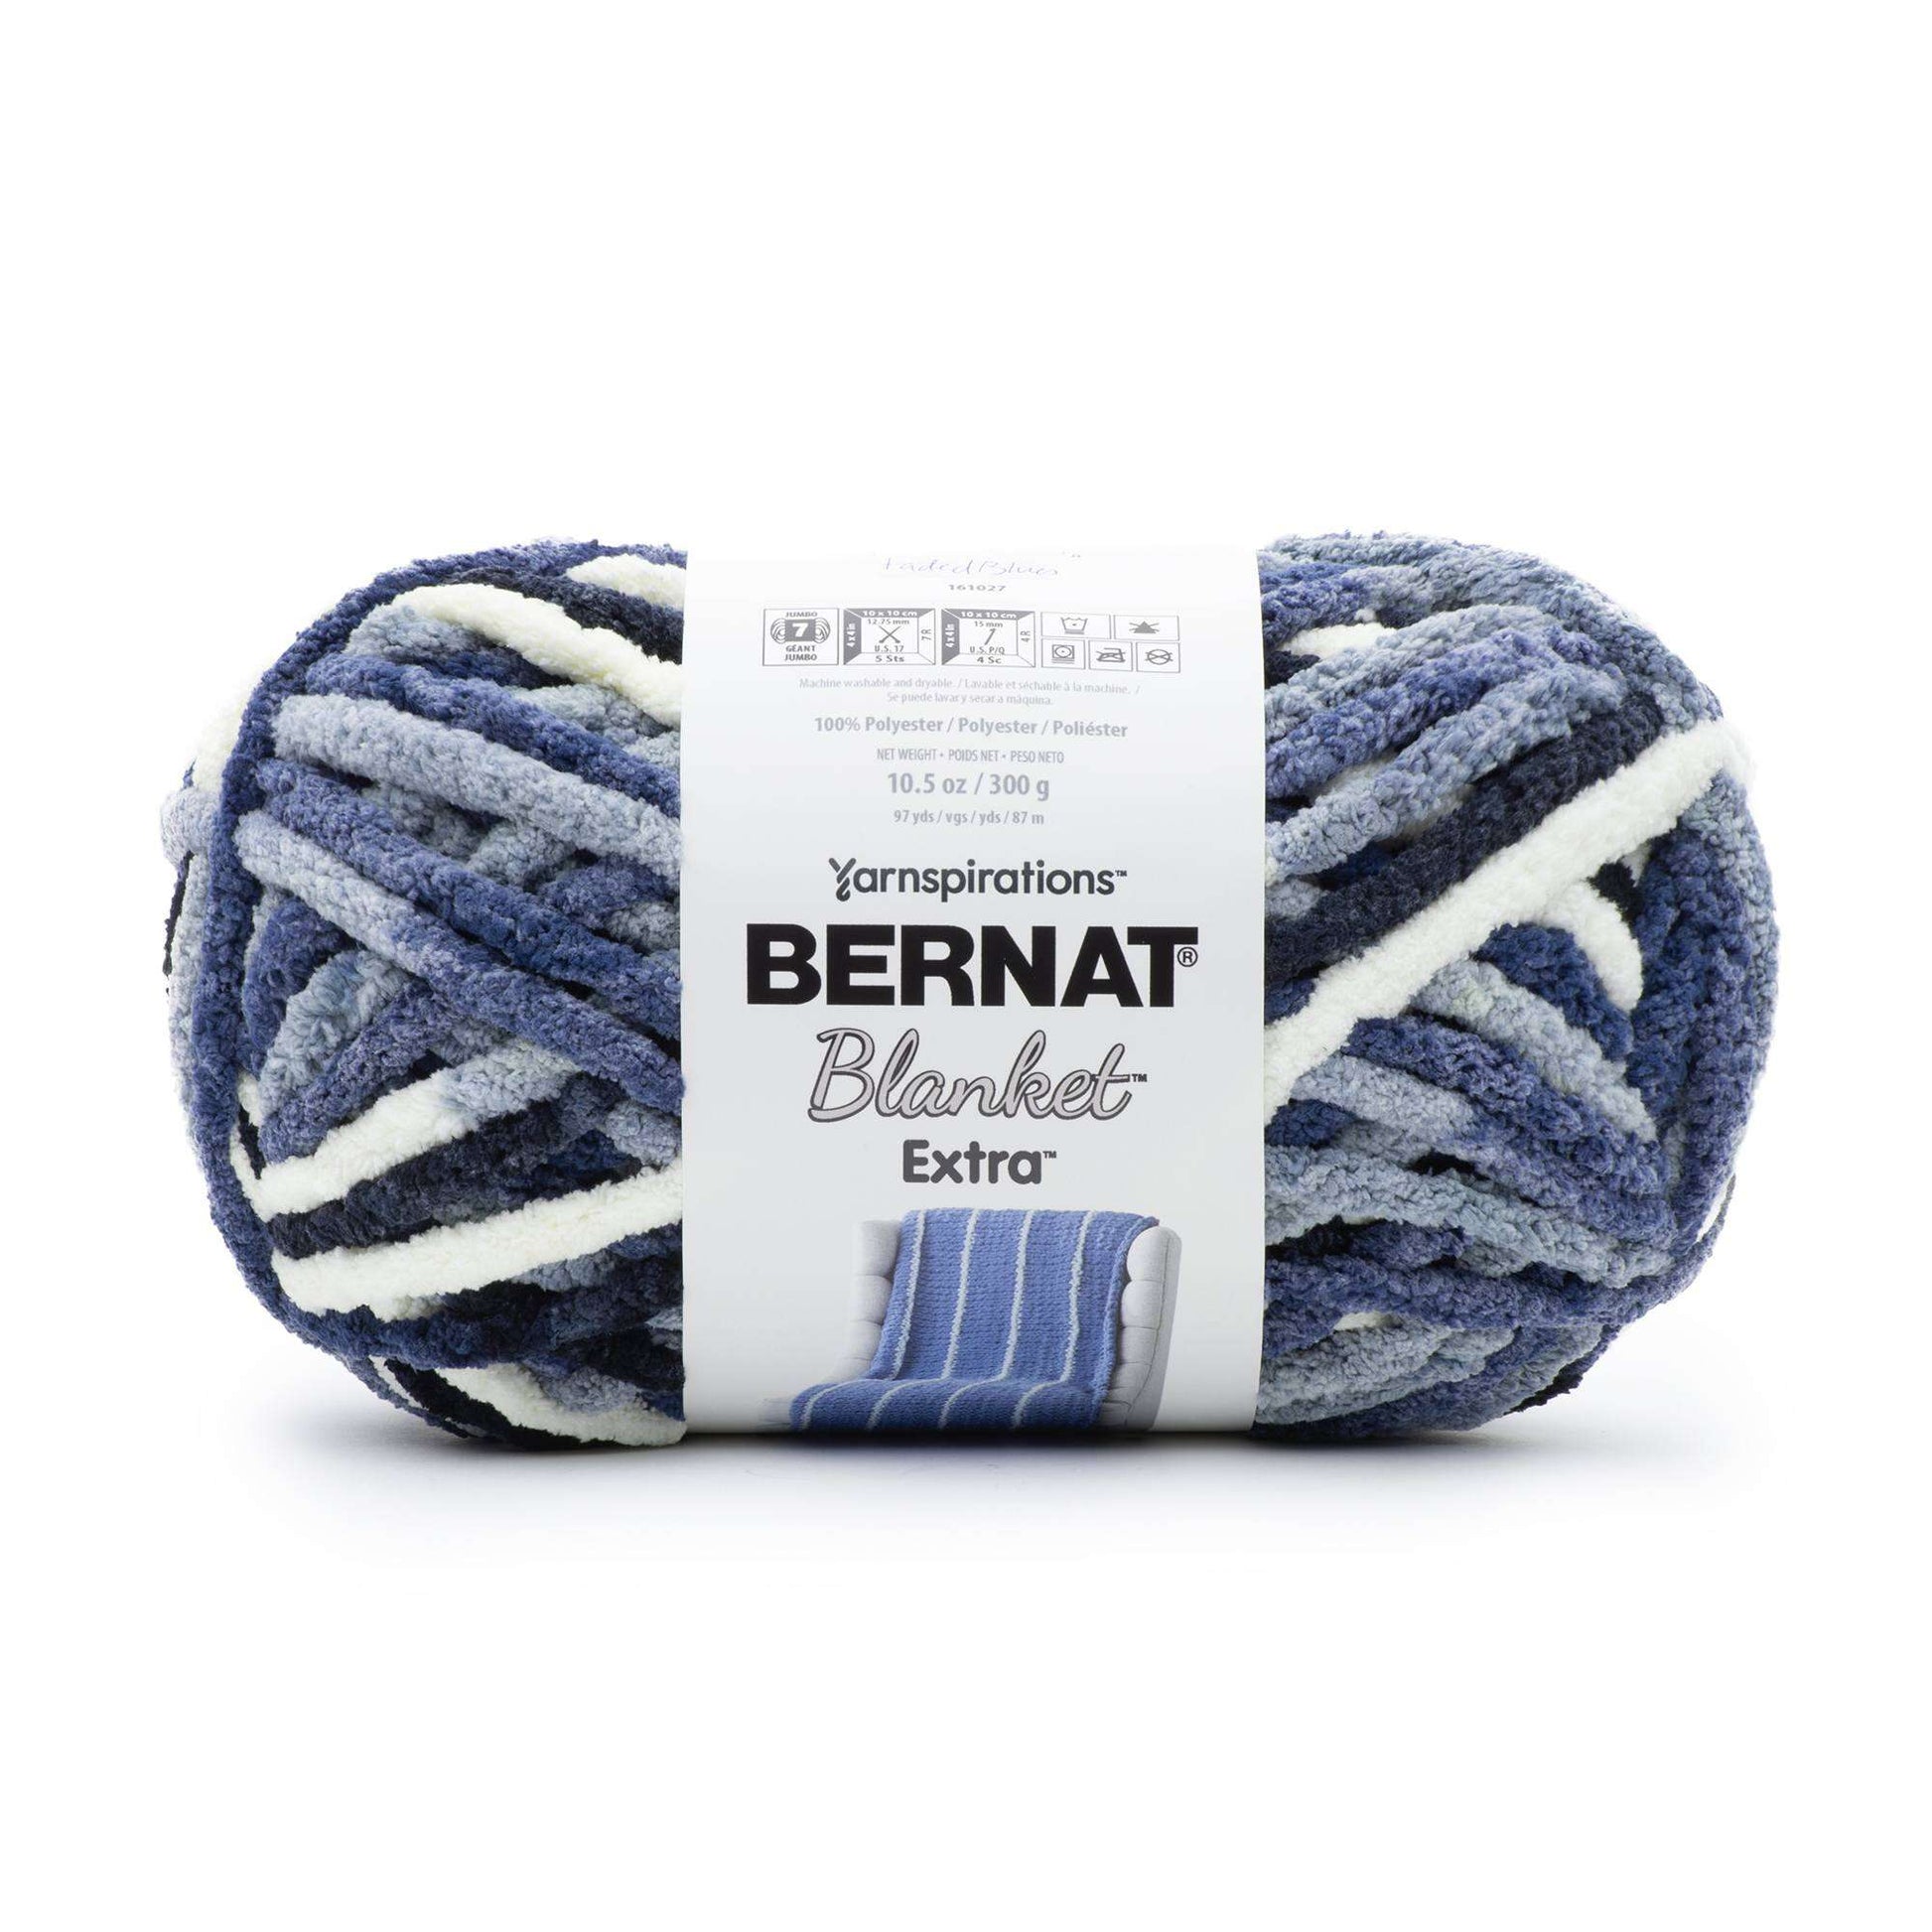 Bernat Blanket Extra Yarn, Vapor Gray